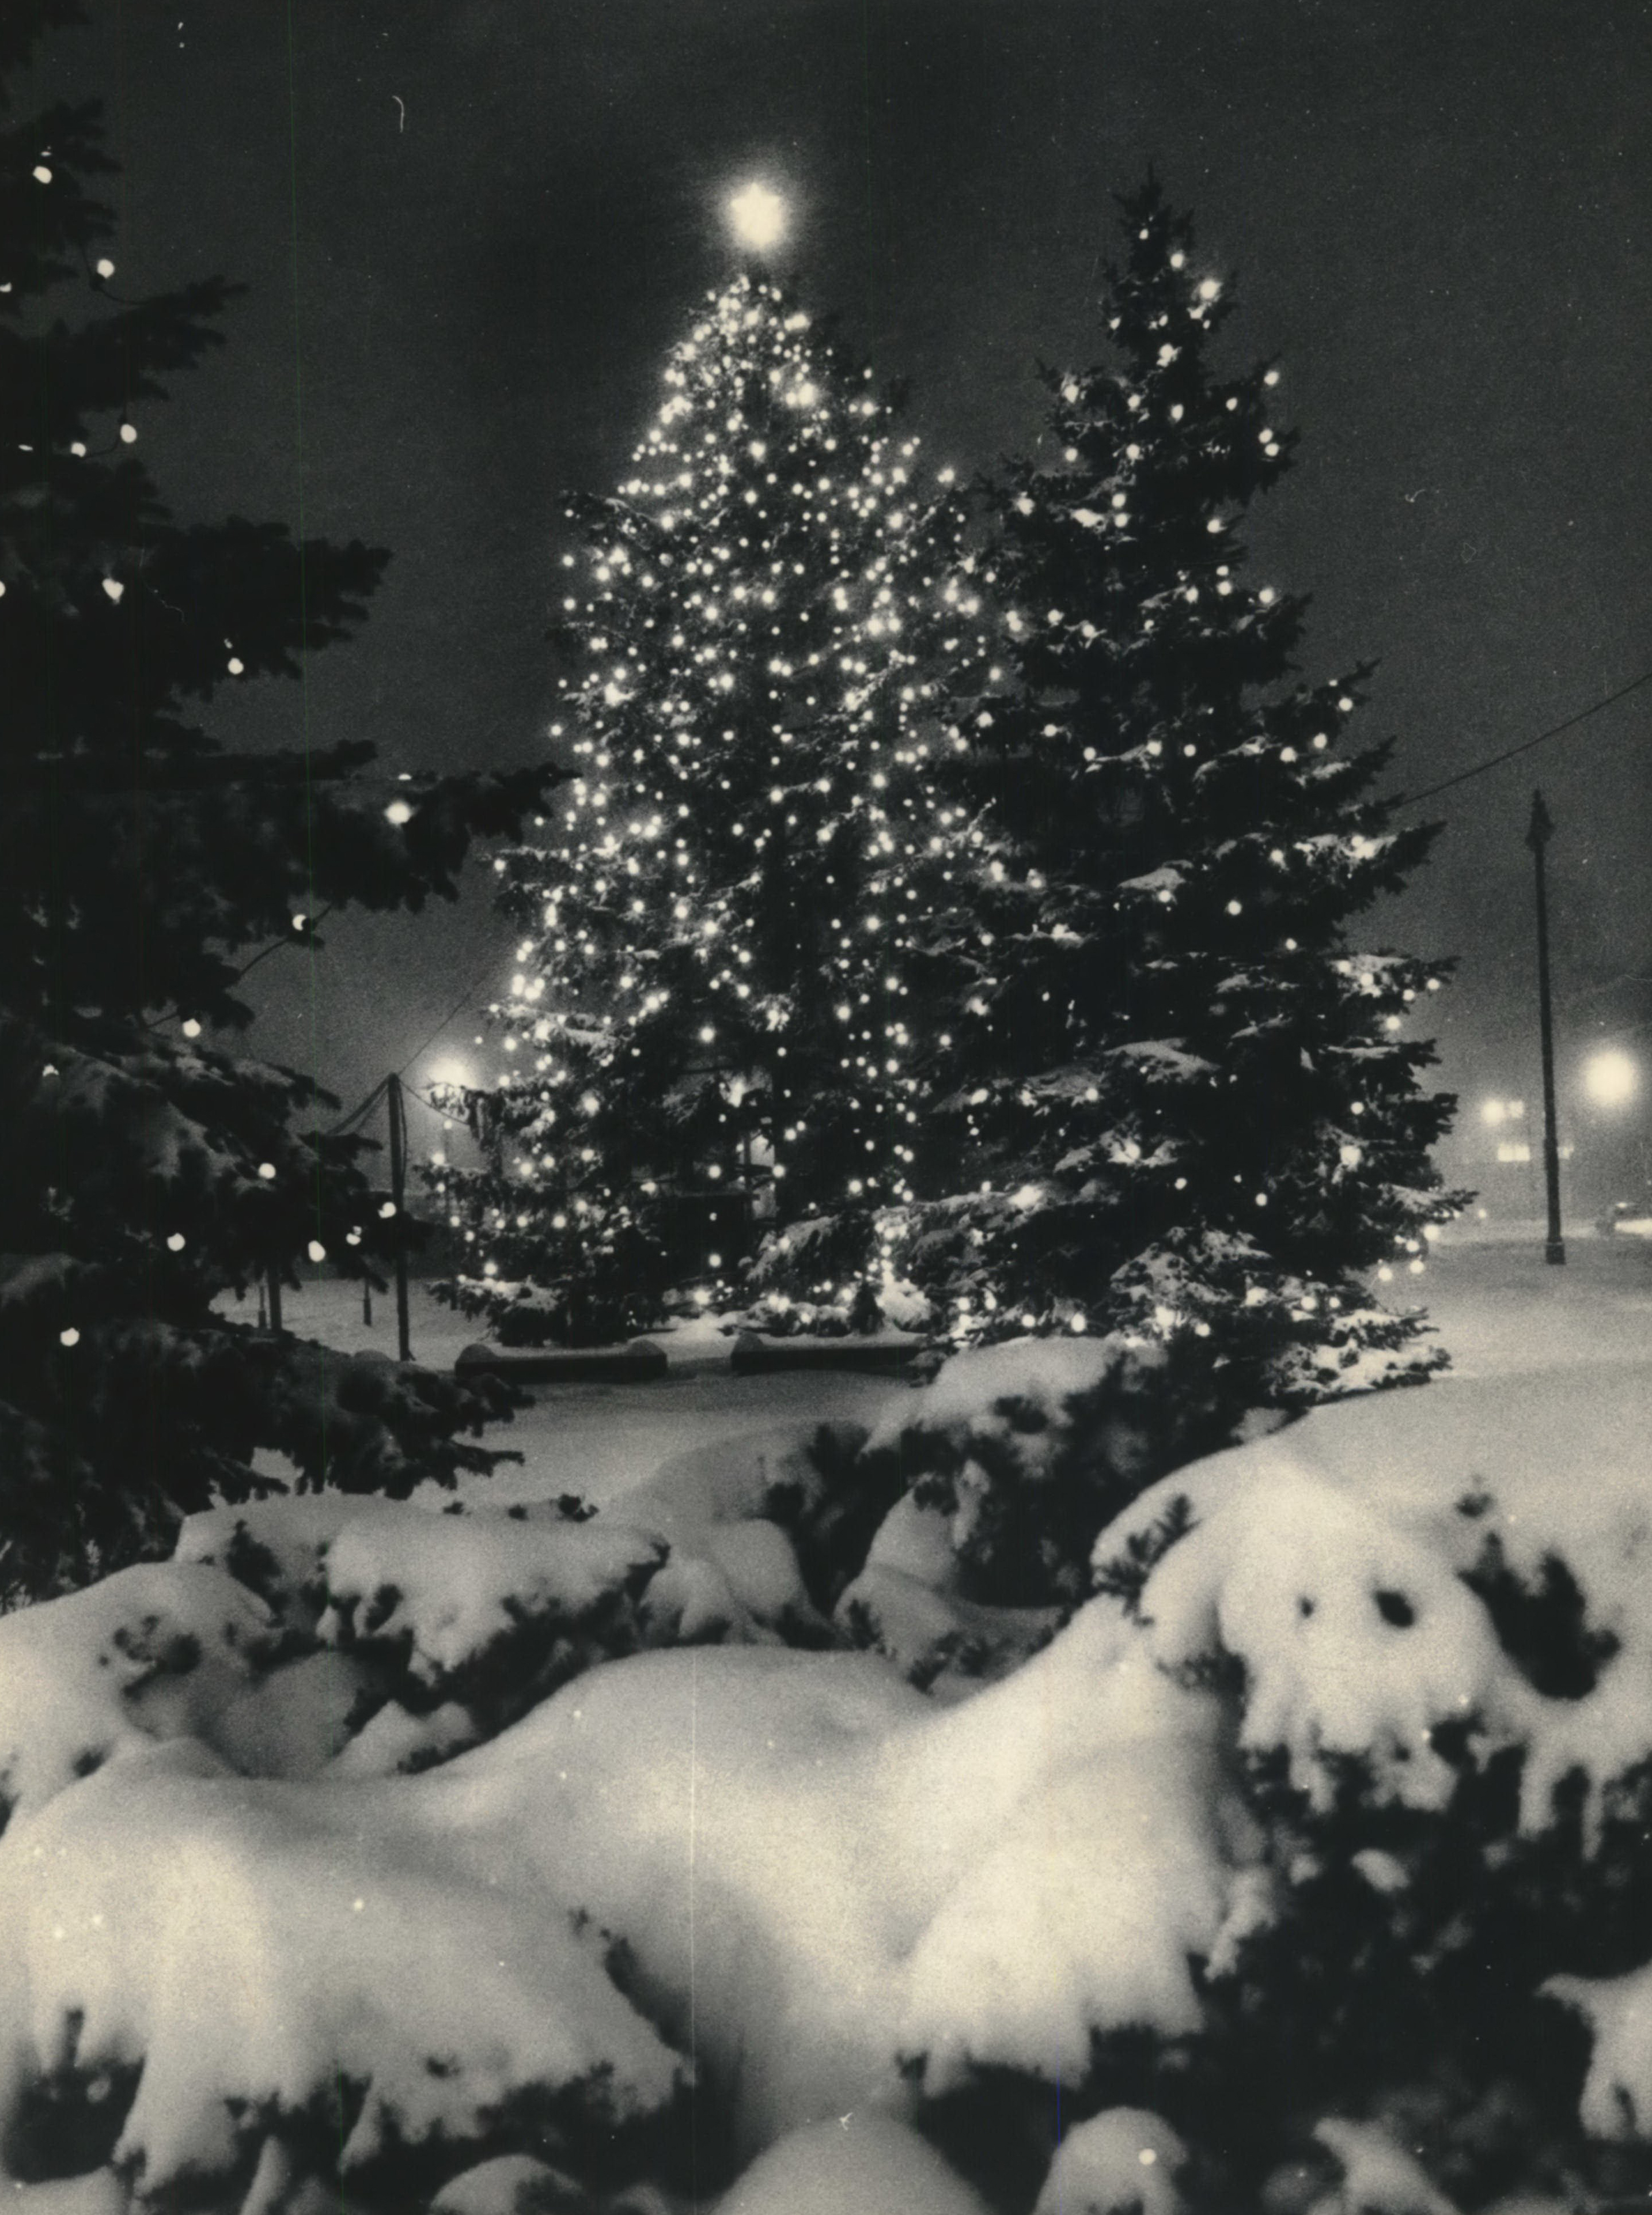 christmas lights and snow tumblr